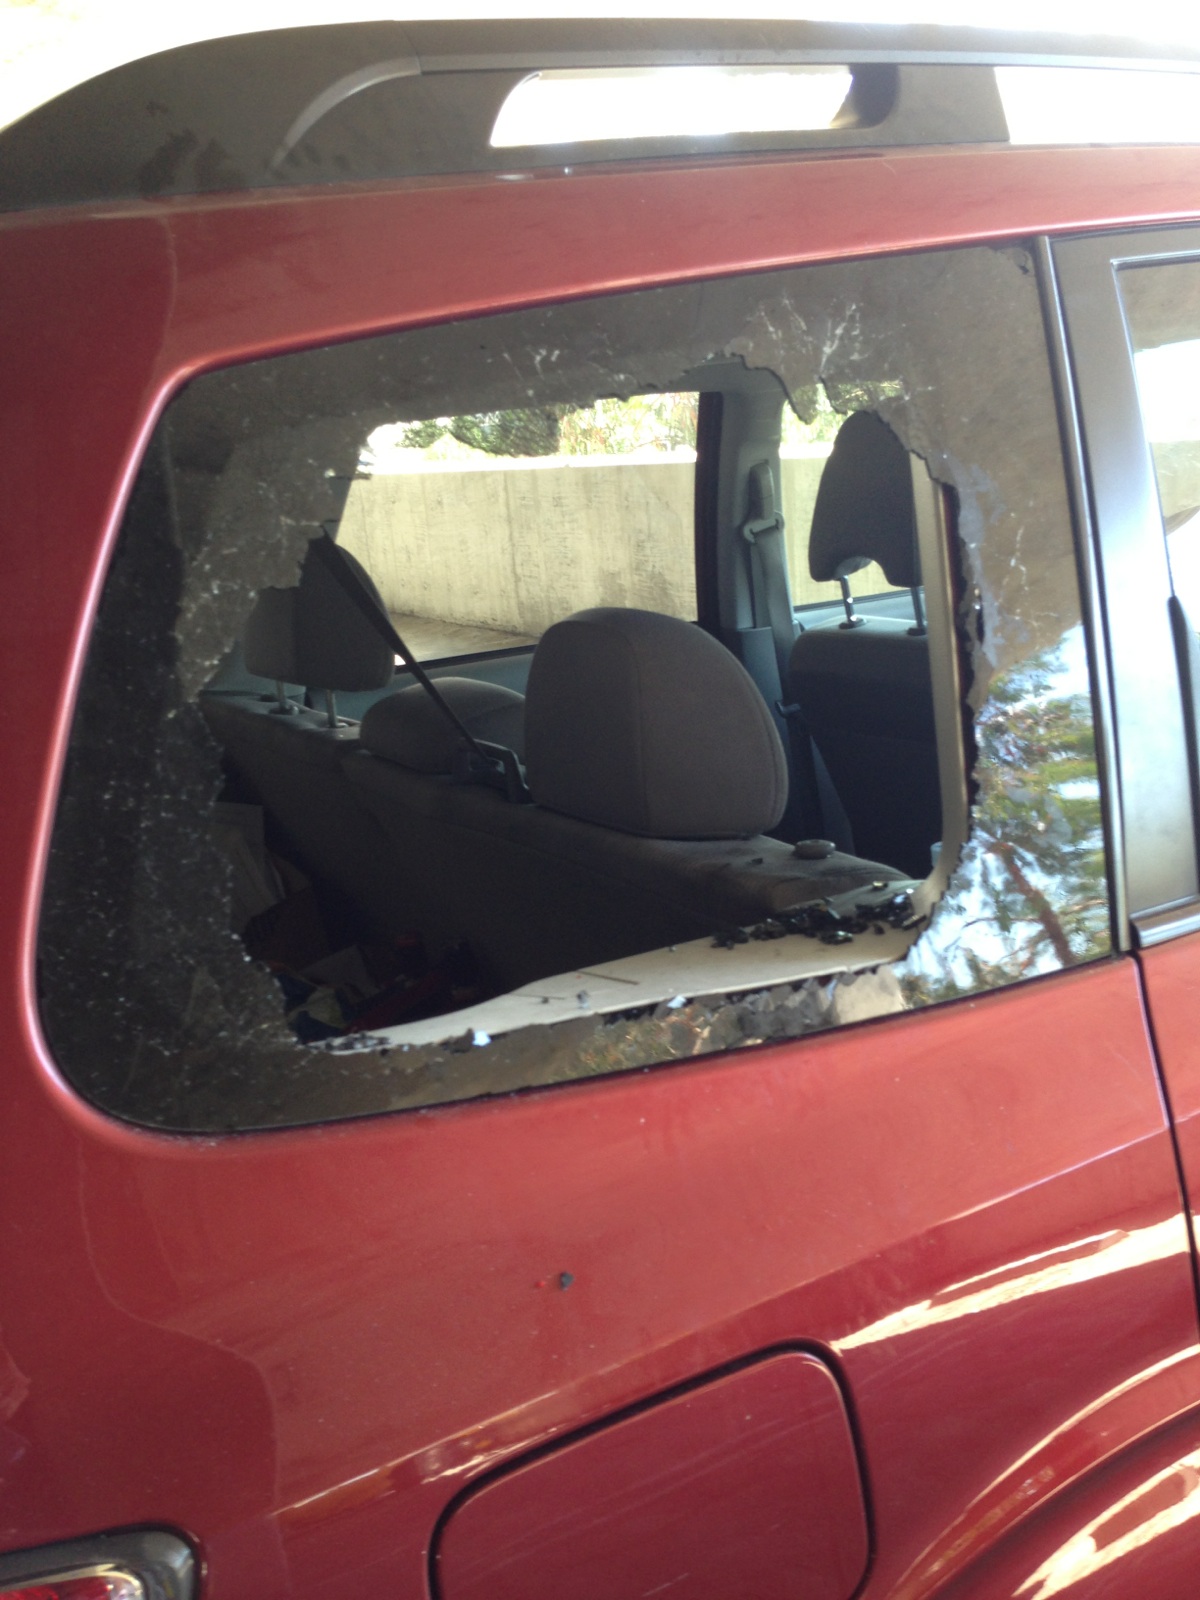 my damaged SUV in Carnivals parking garage that went days un-noticed